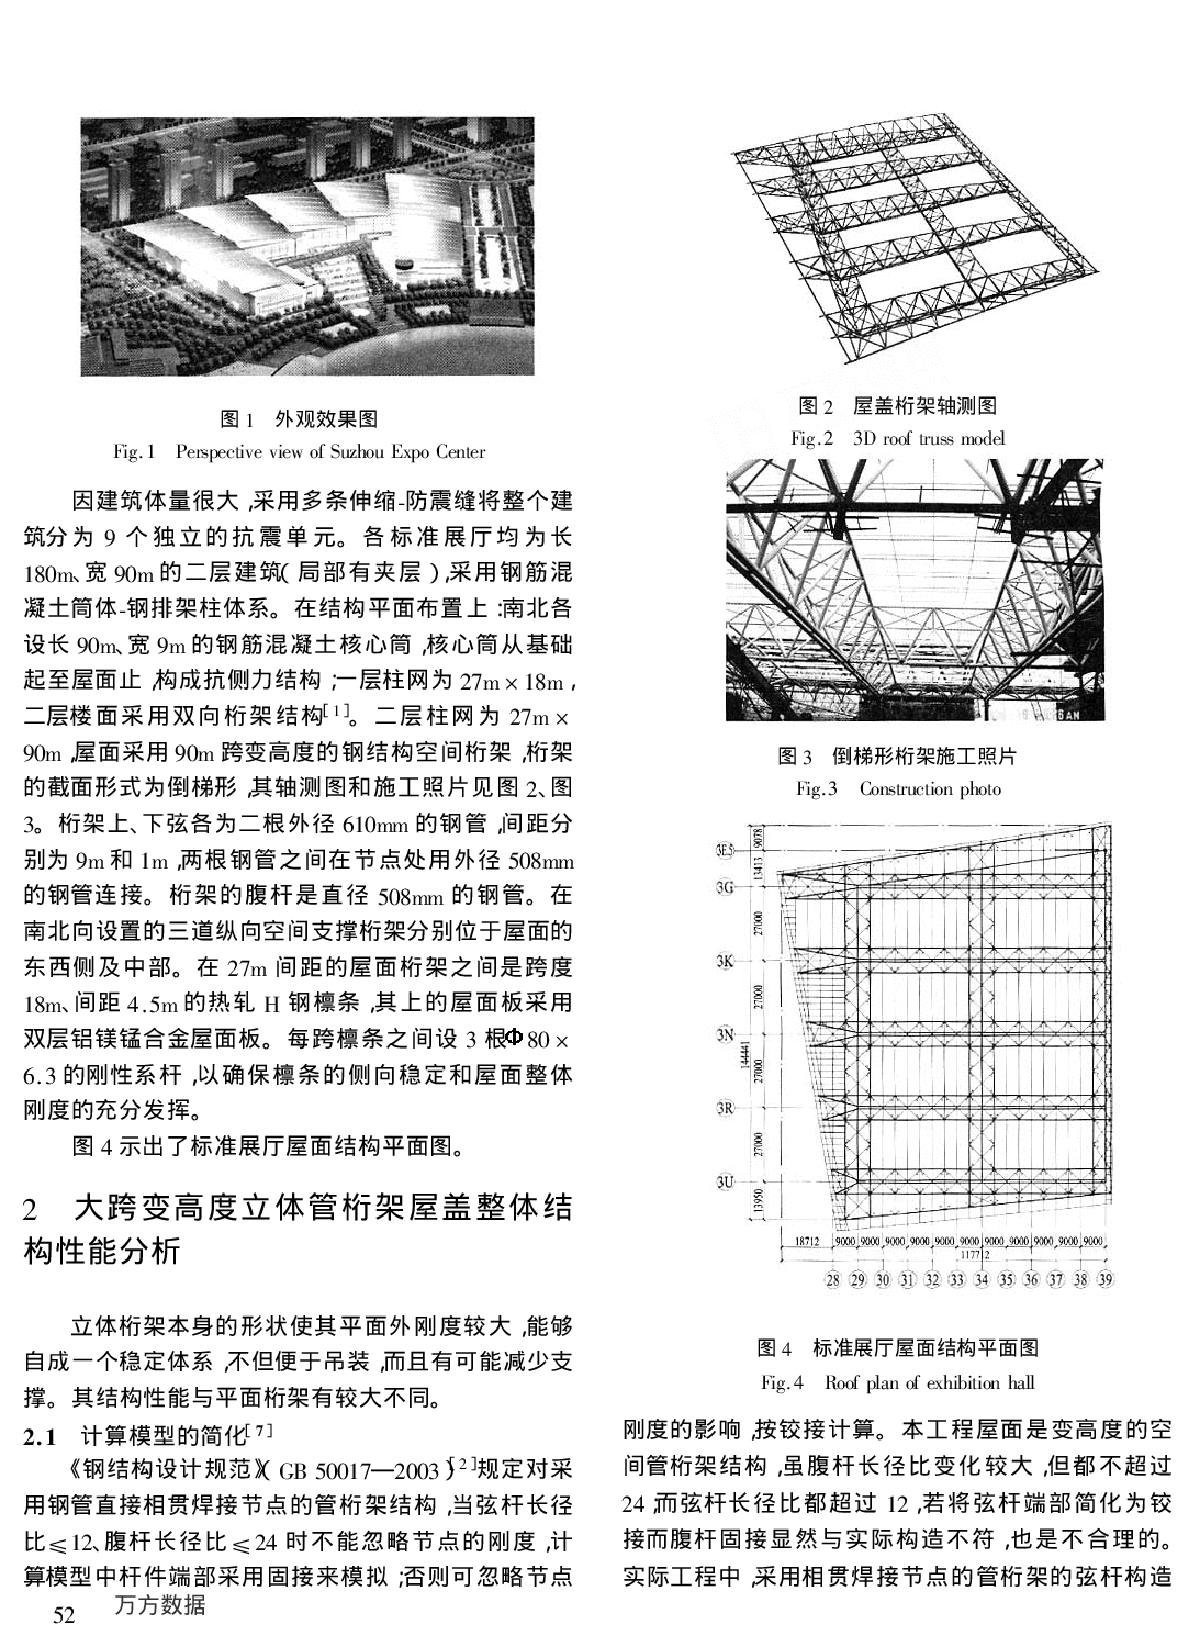 苏州国际博览中心屋盖结构分析和并联K形圆钢管相贯节点研究-图二